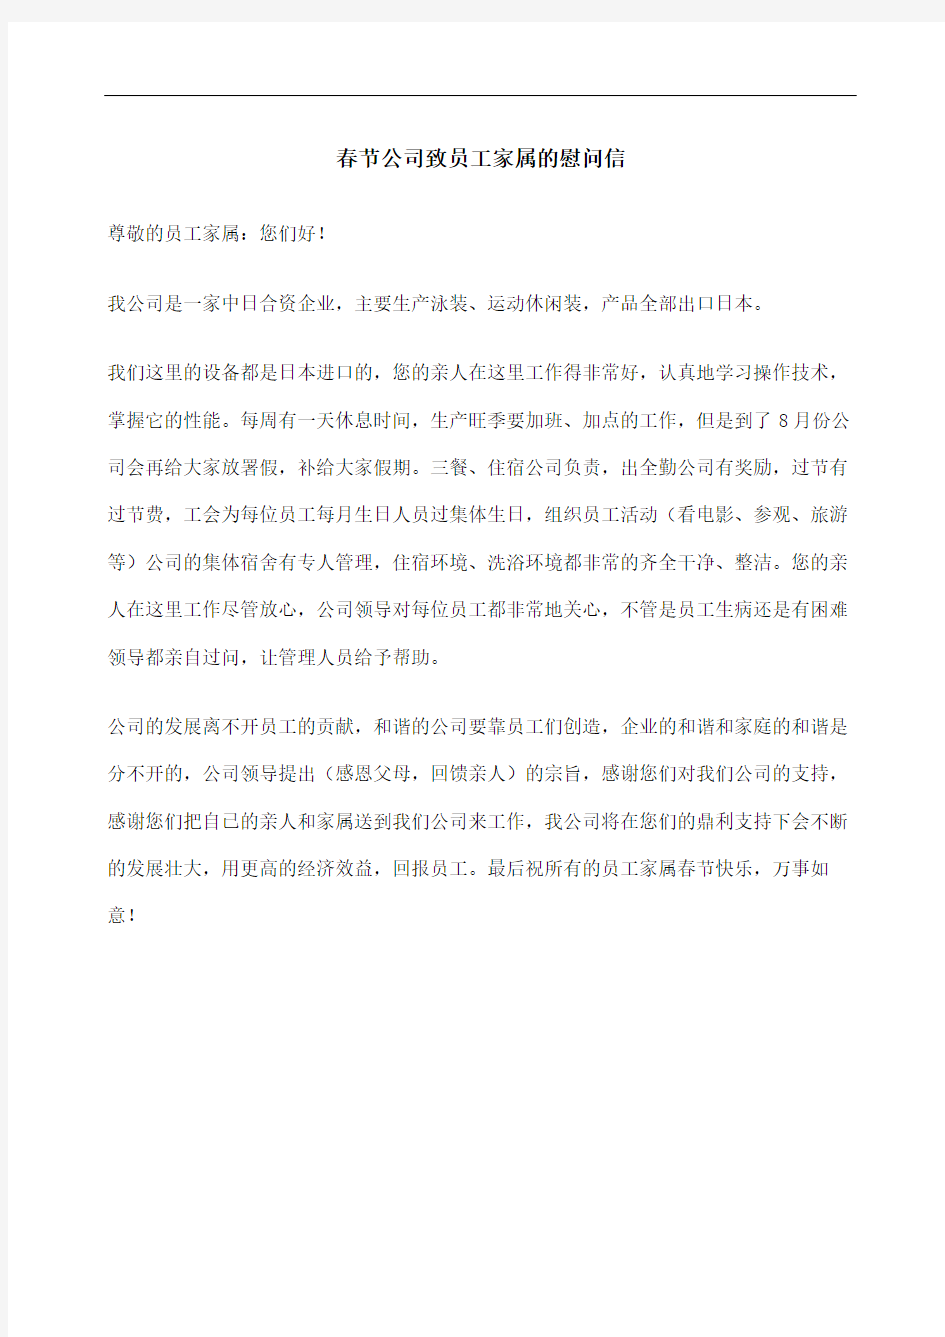 春节公司致员工家属的慰问信完整版